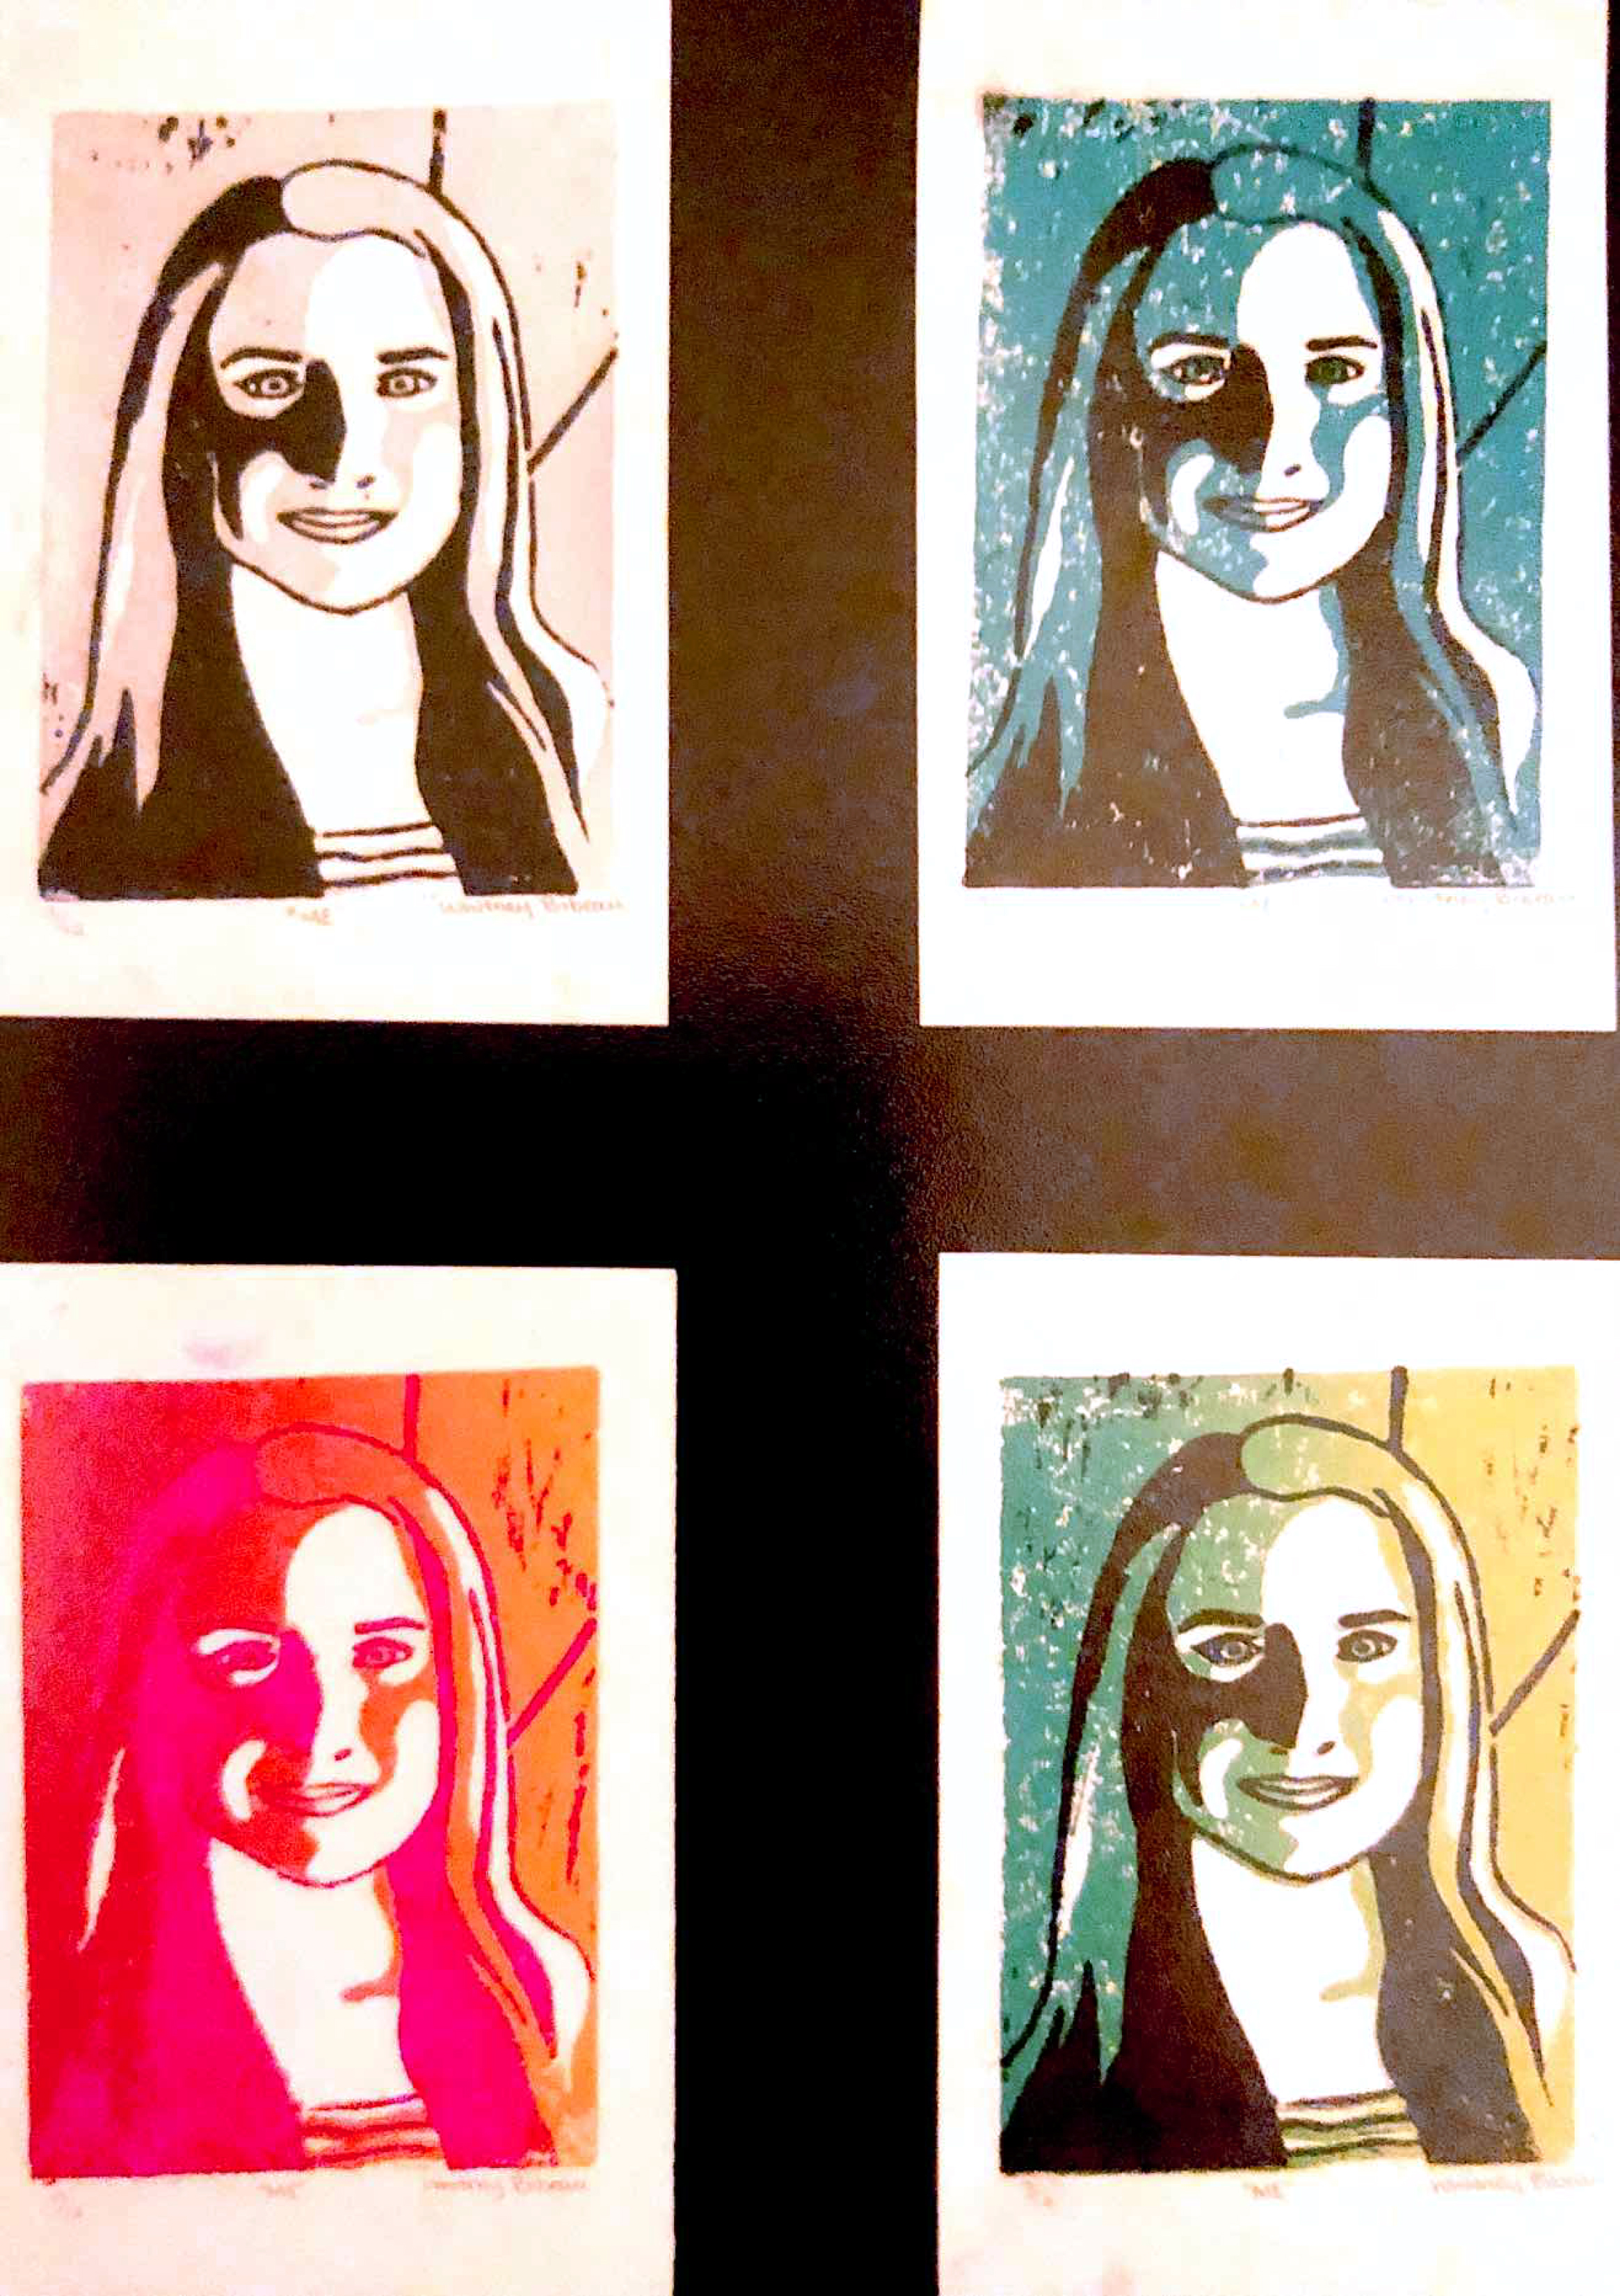 Middle School Pop Art Reduction Prints- Self Portrait